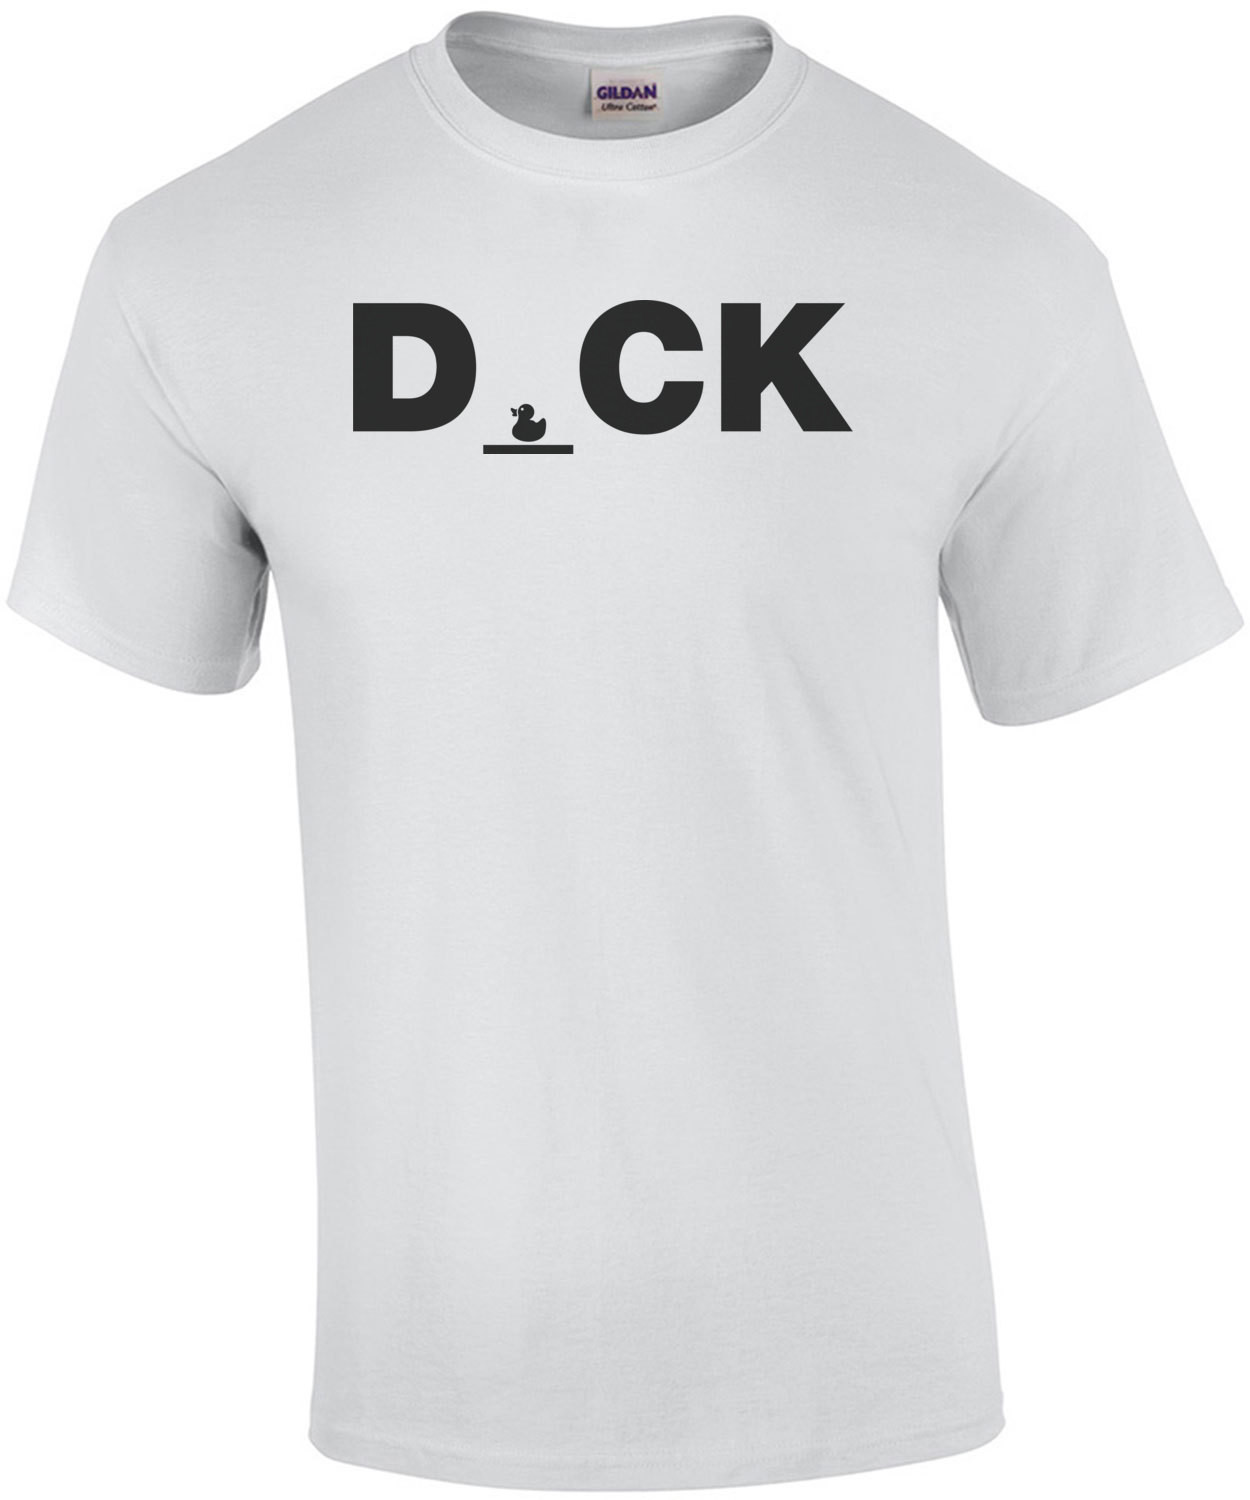 Duck Dick T-Shirt